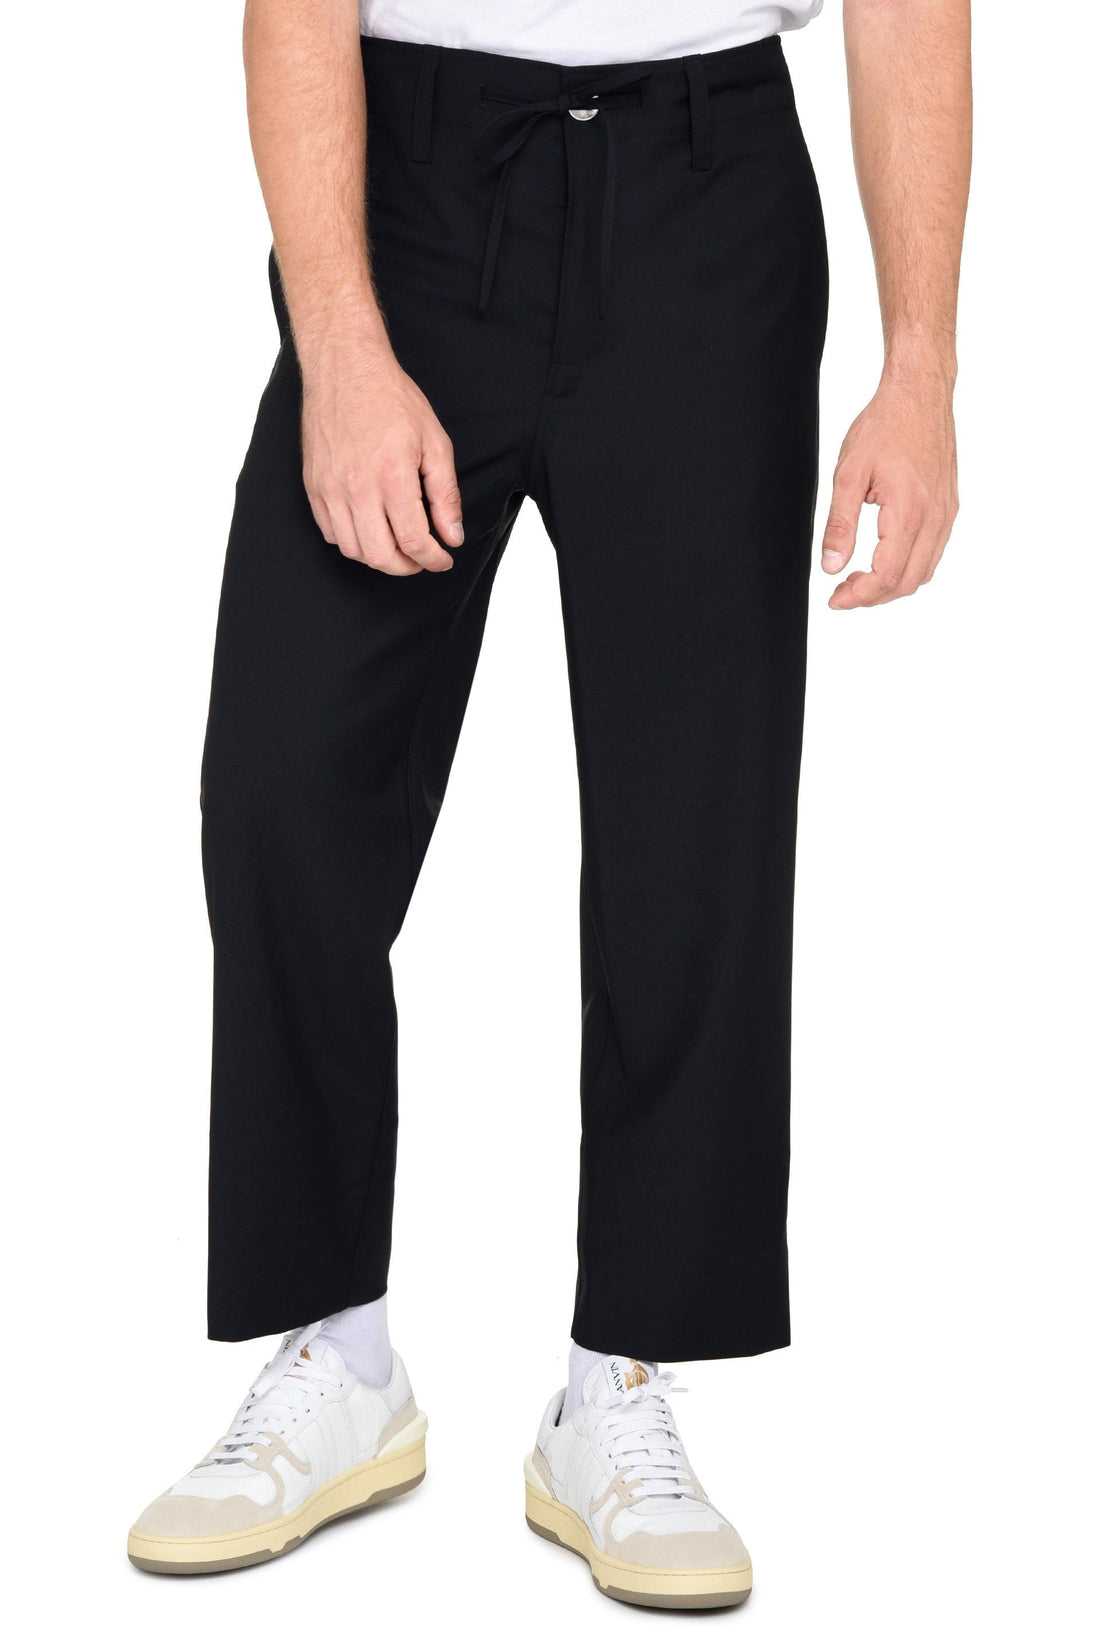 Lanvin-OUTLET-SALE-Wool trousers-ARCHIVIST